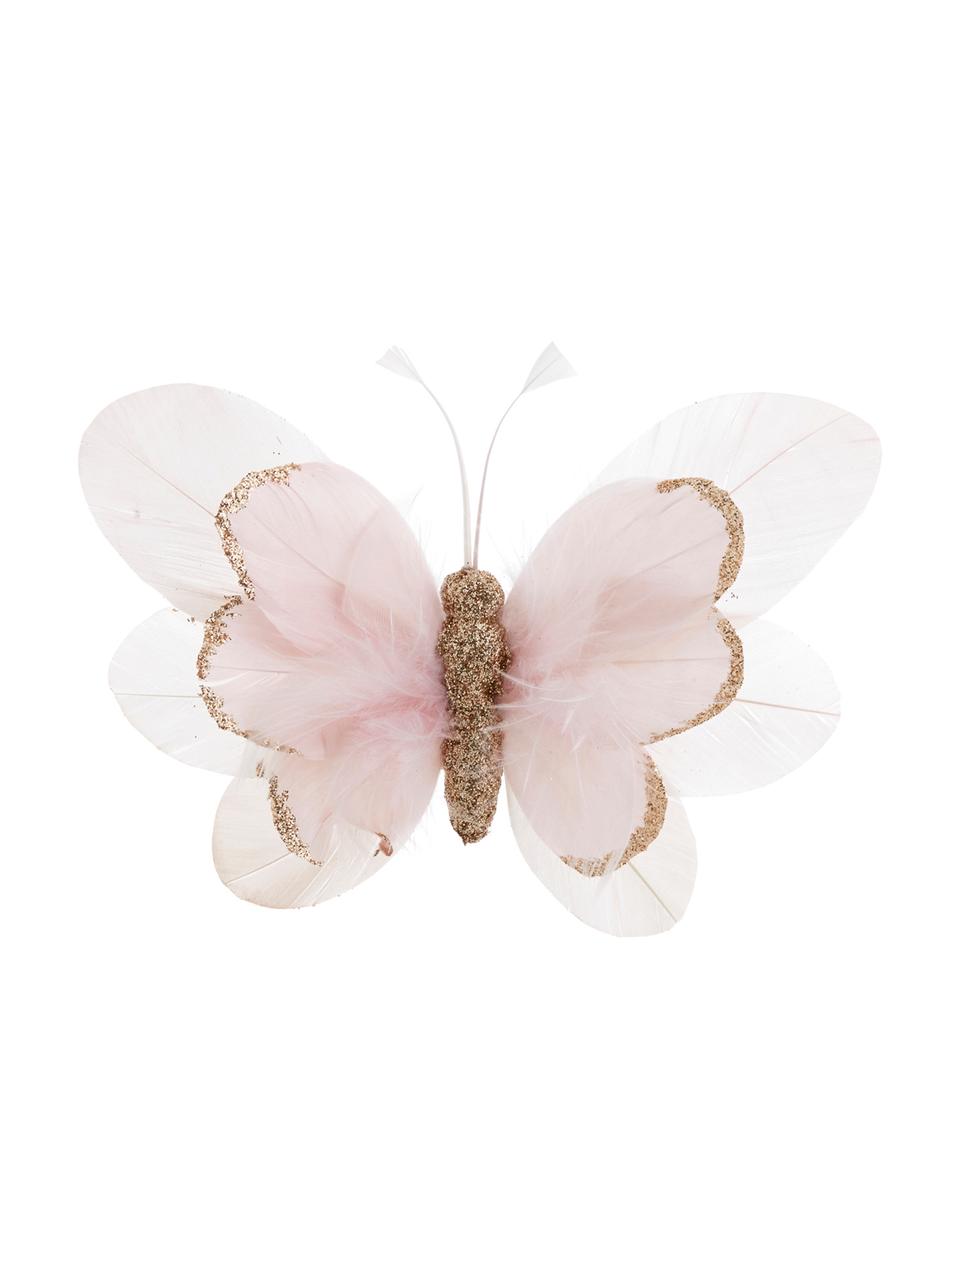 Adorno navideño Butterfly, 6 uds., Rosa, blanco, dorado, An 14 x Al 3 cm